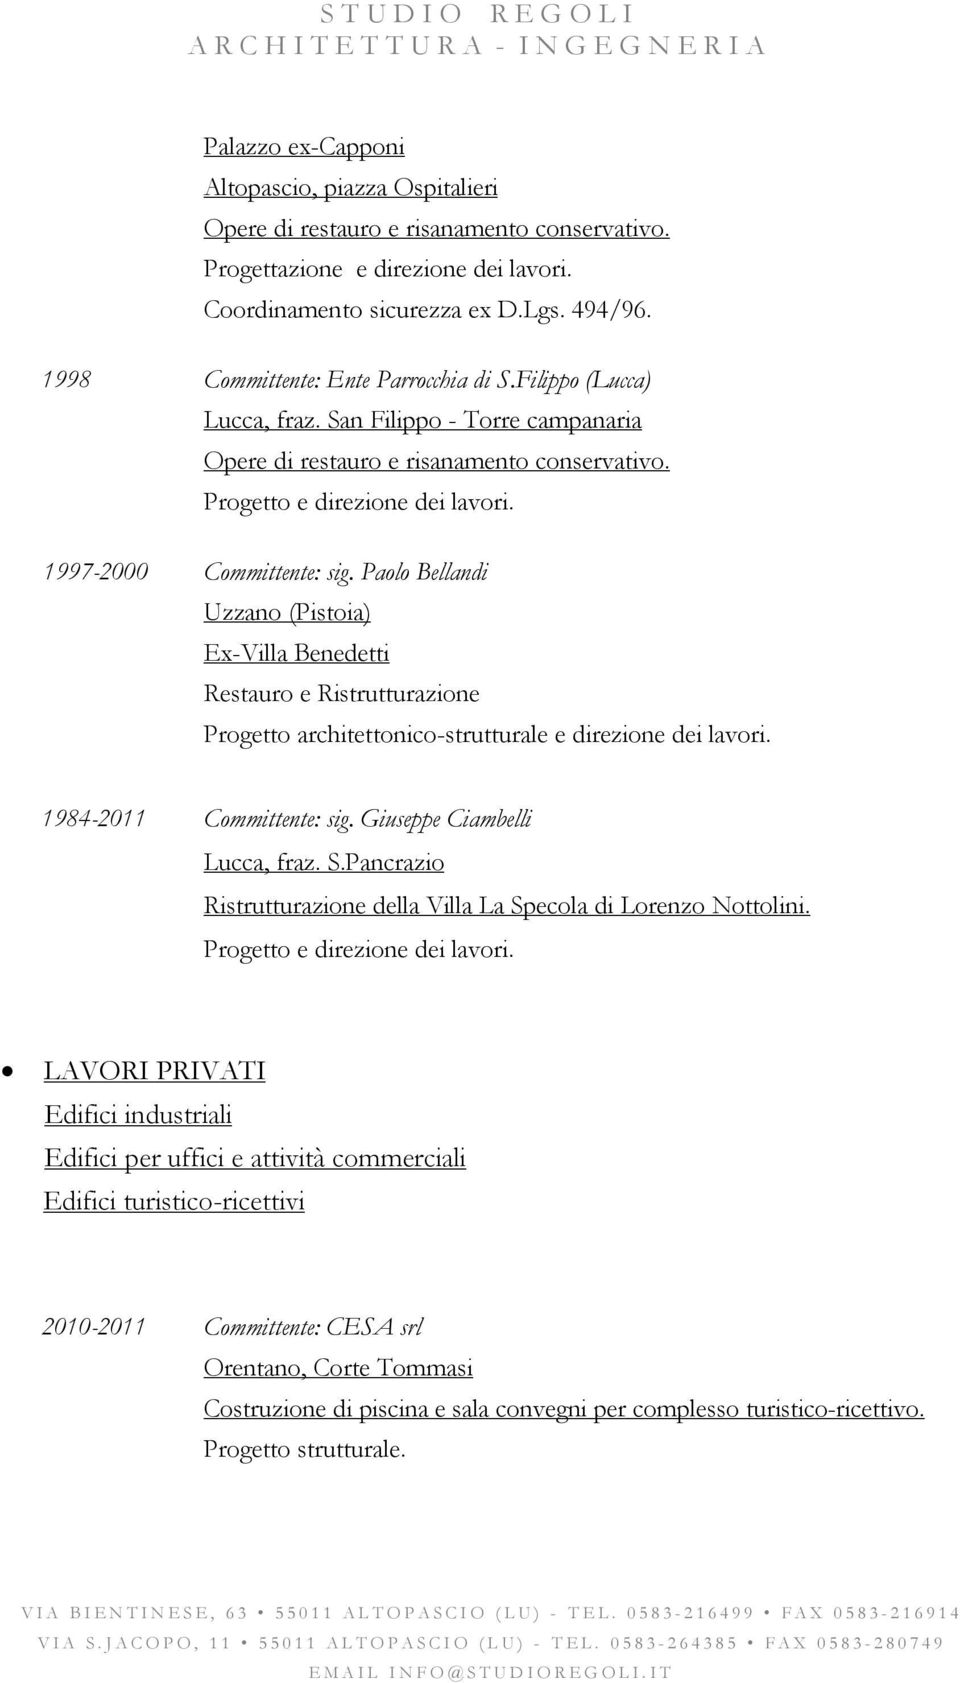 1997-2000 Committente: sig. Paolo Bellandi Uzzano (Pistoia) Ex-Villa Benedetti Restauro e Ristrutturazione 1984-2011 Committente: sig. Giuseppe Ciambelli Lucca, fraz. S.